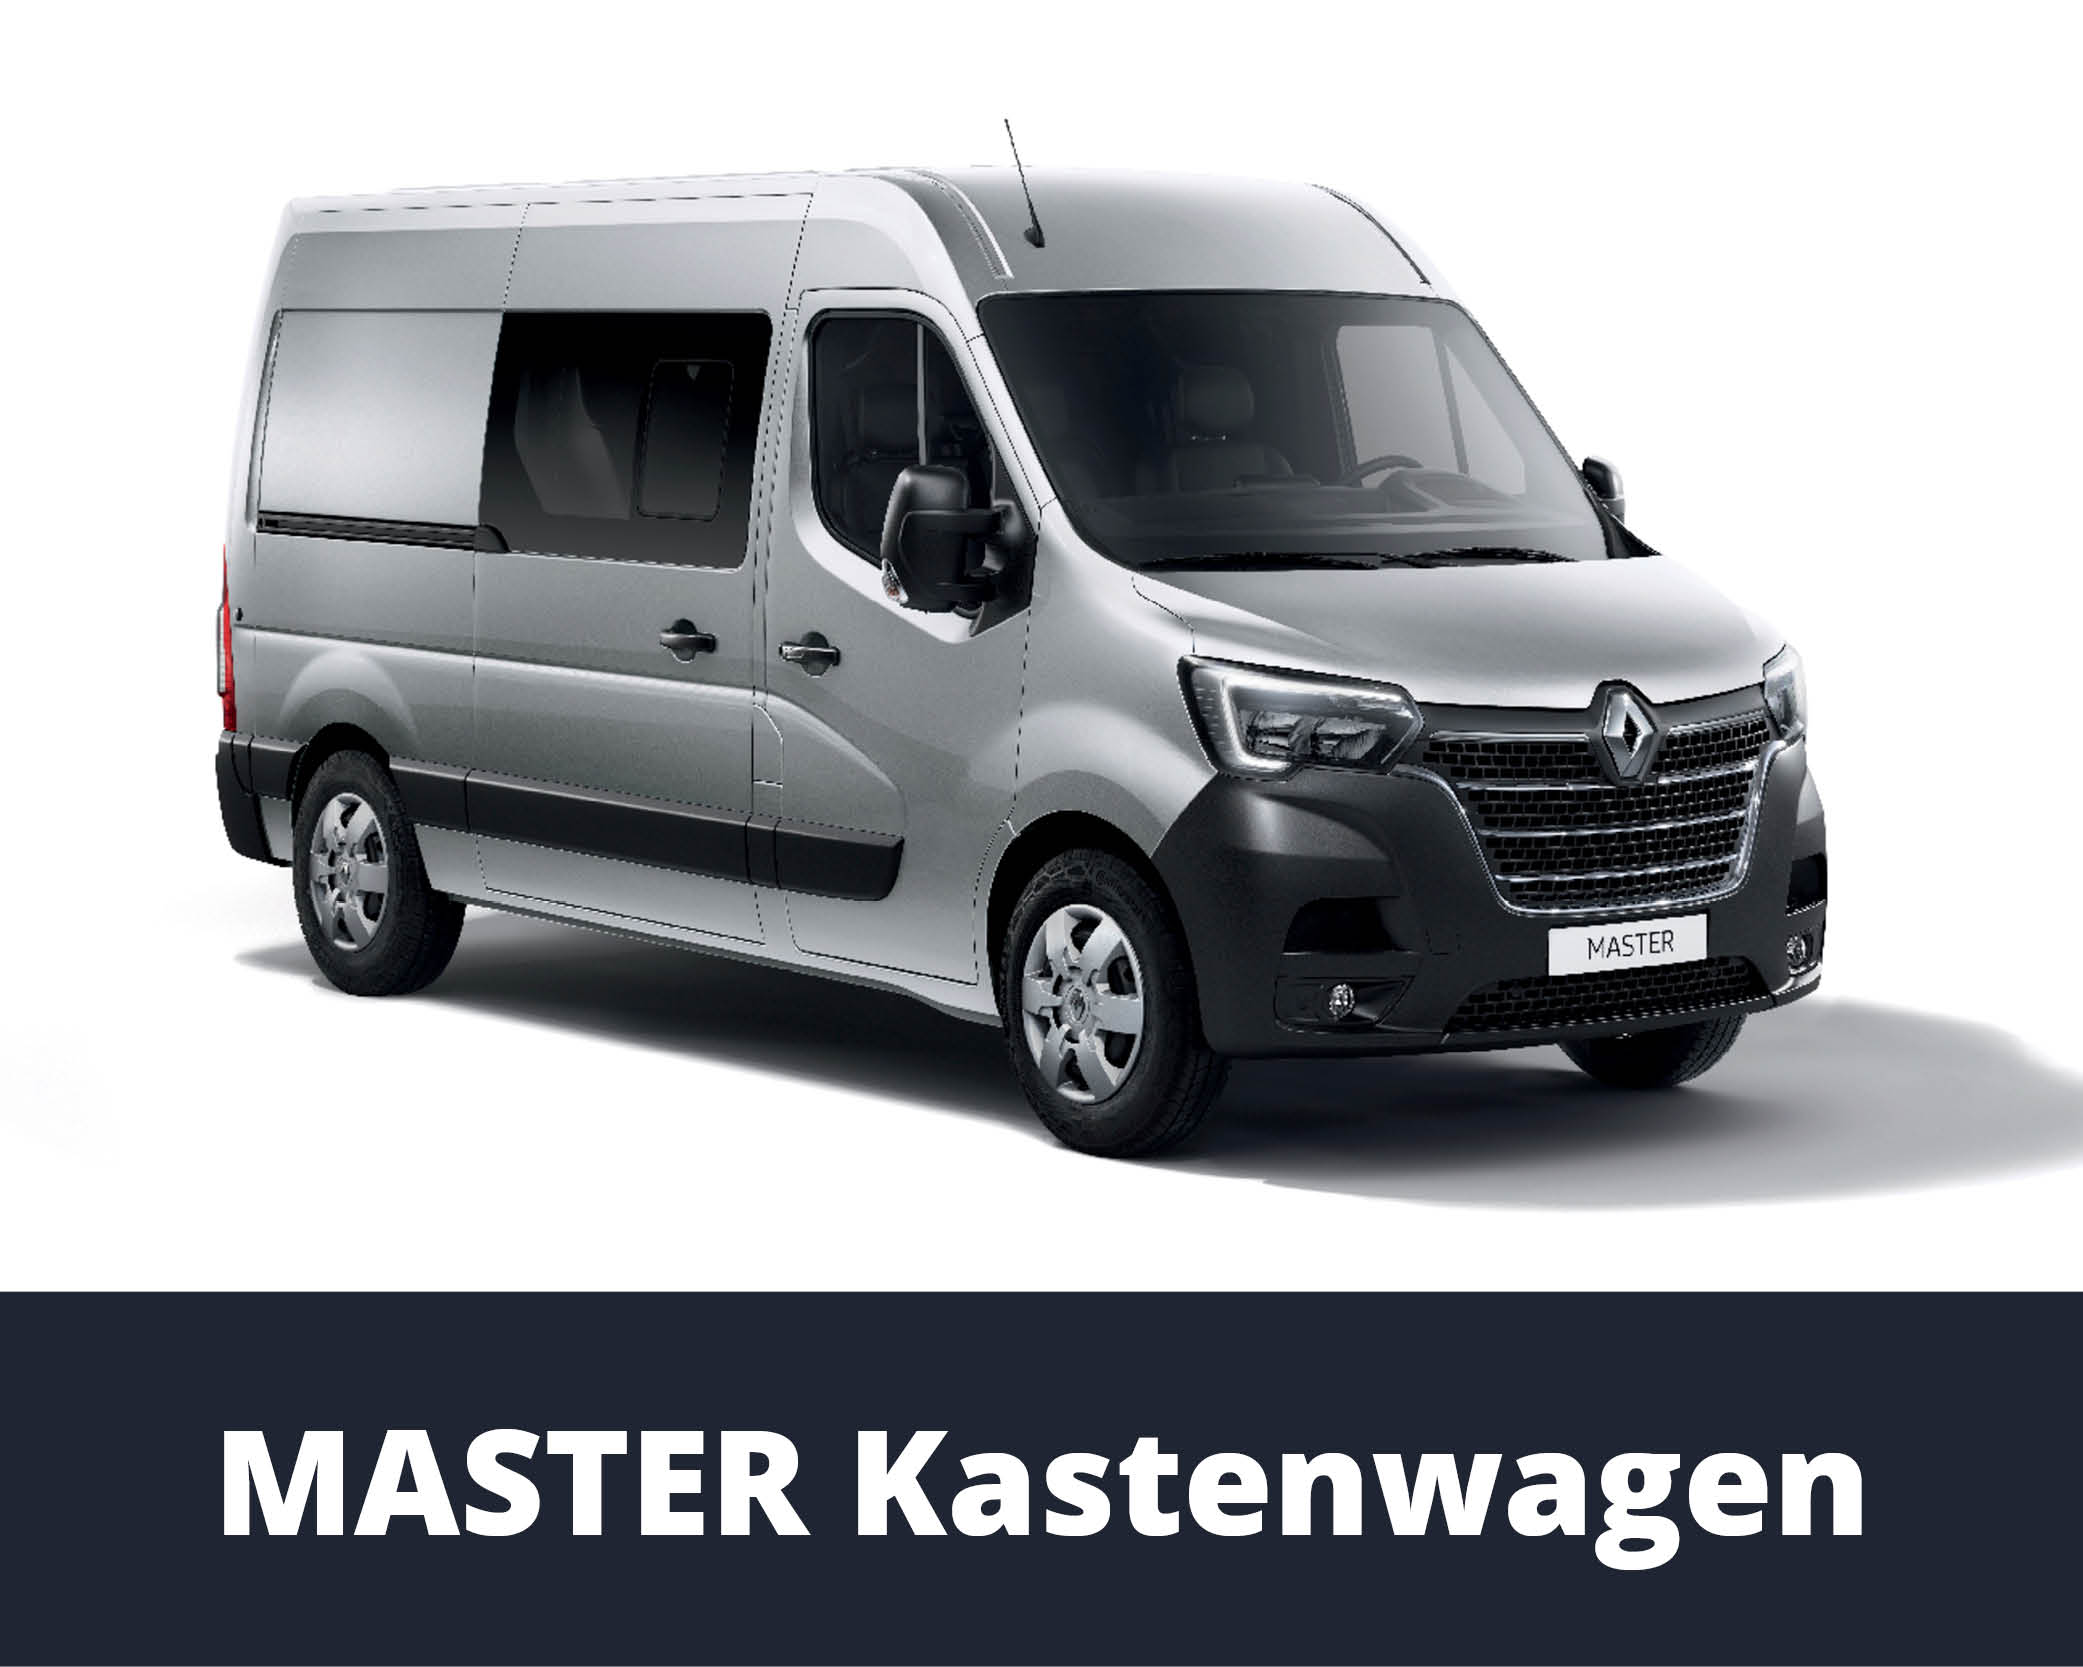 Renault Master Kastenwagen